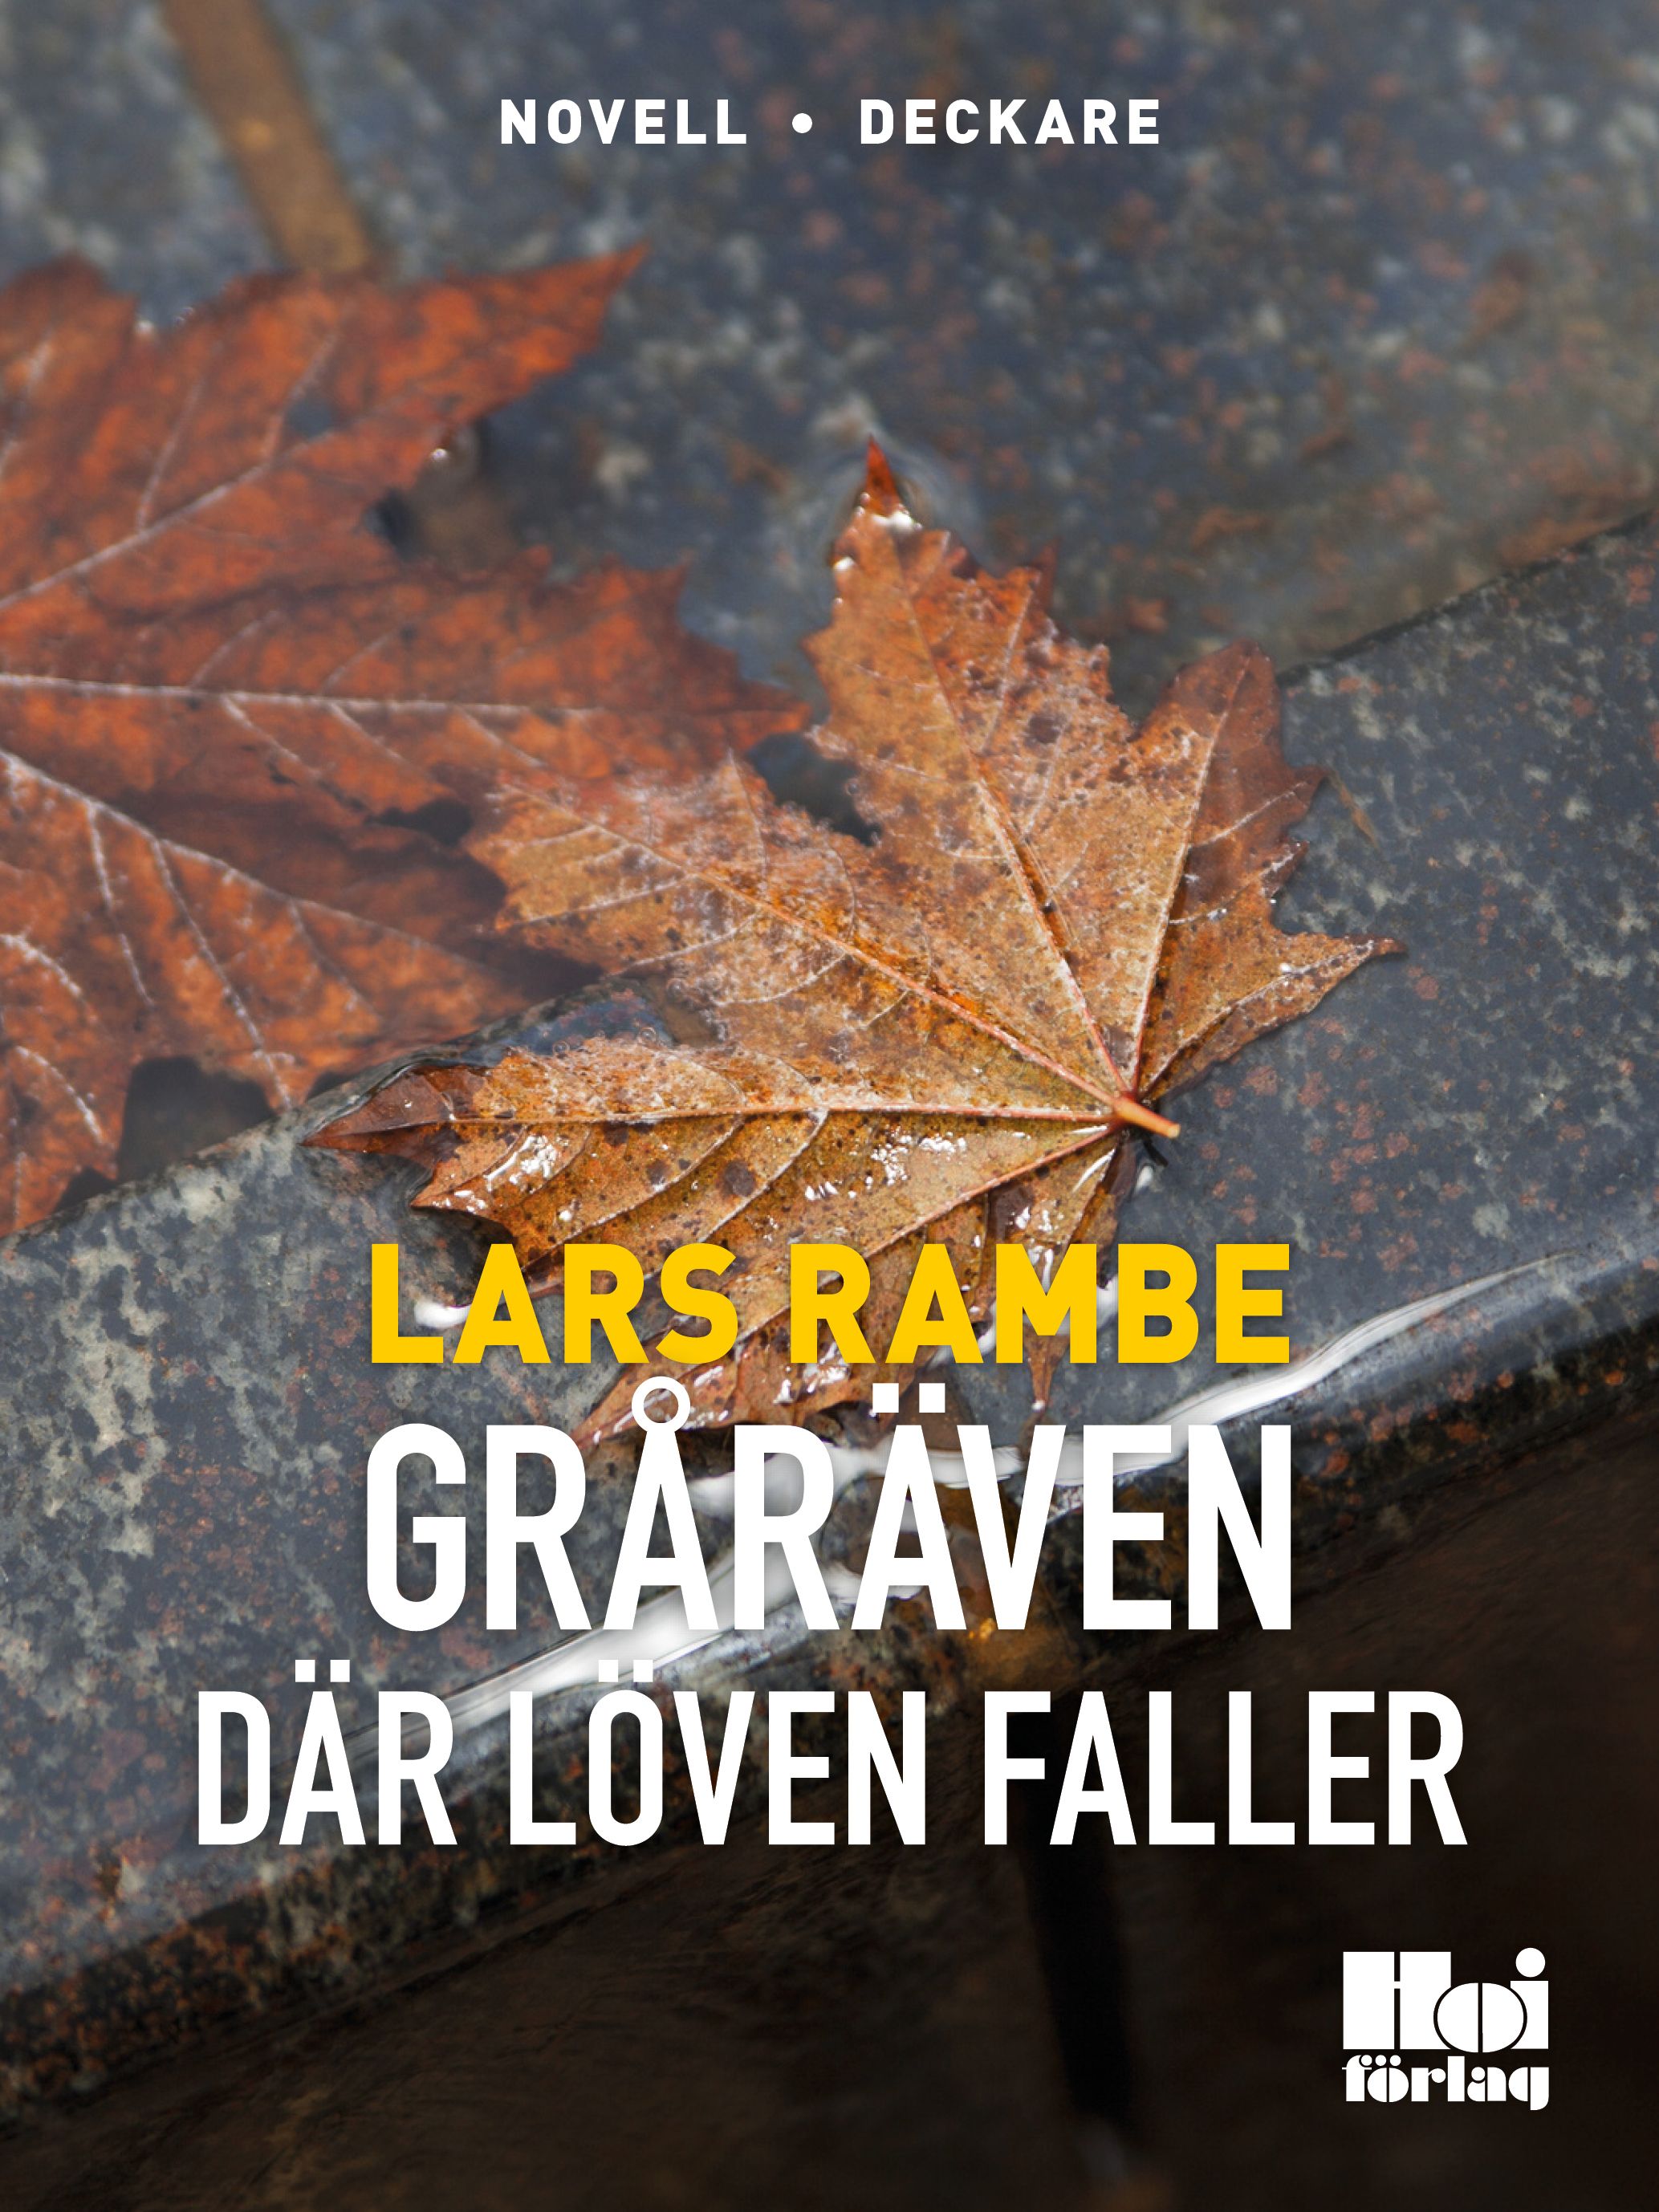 Gråräven 2 - Där löven faller, e-bok av Lars Rambe